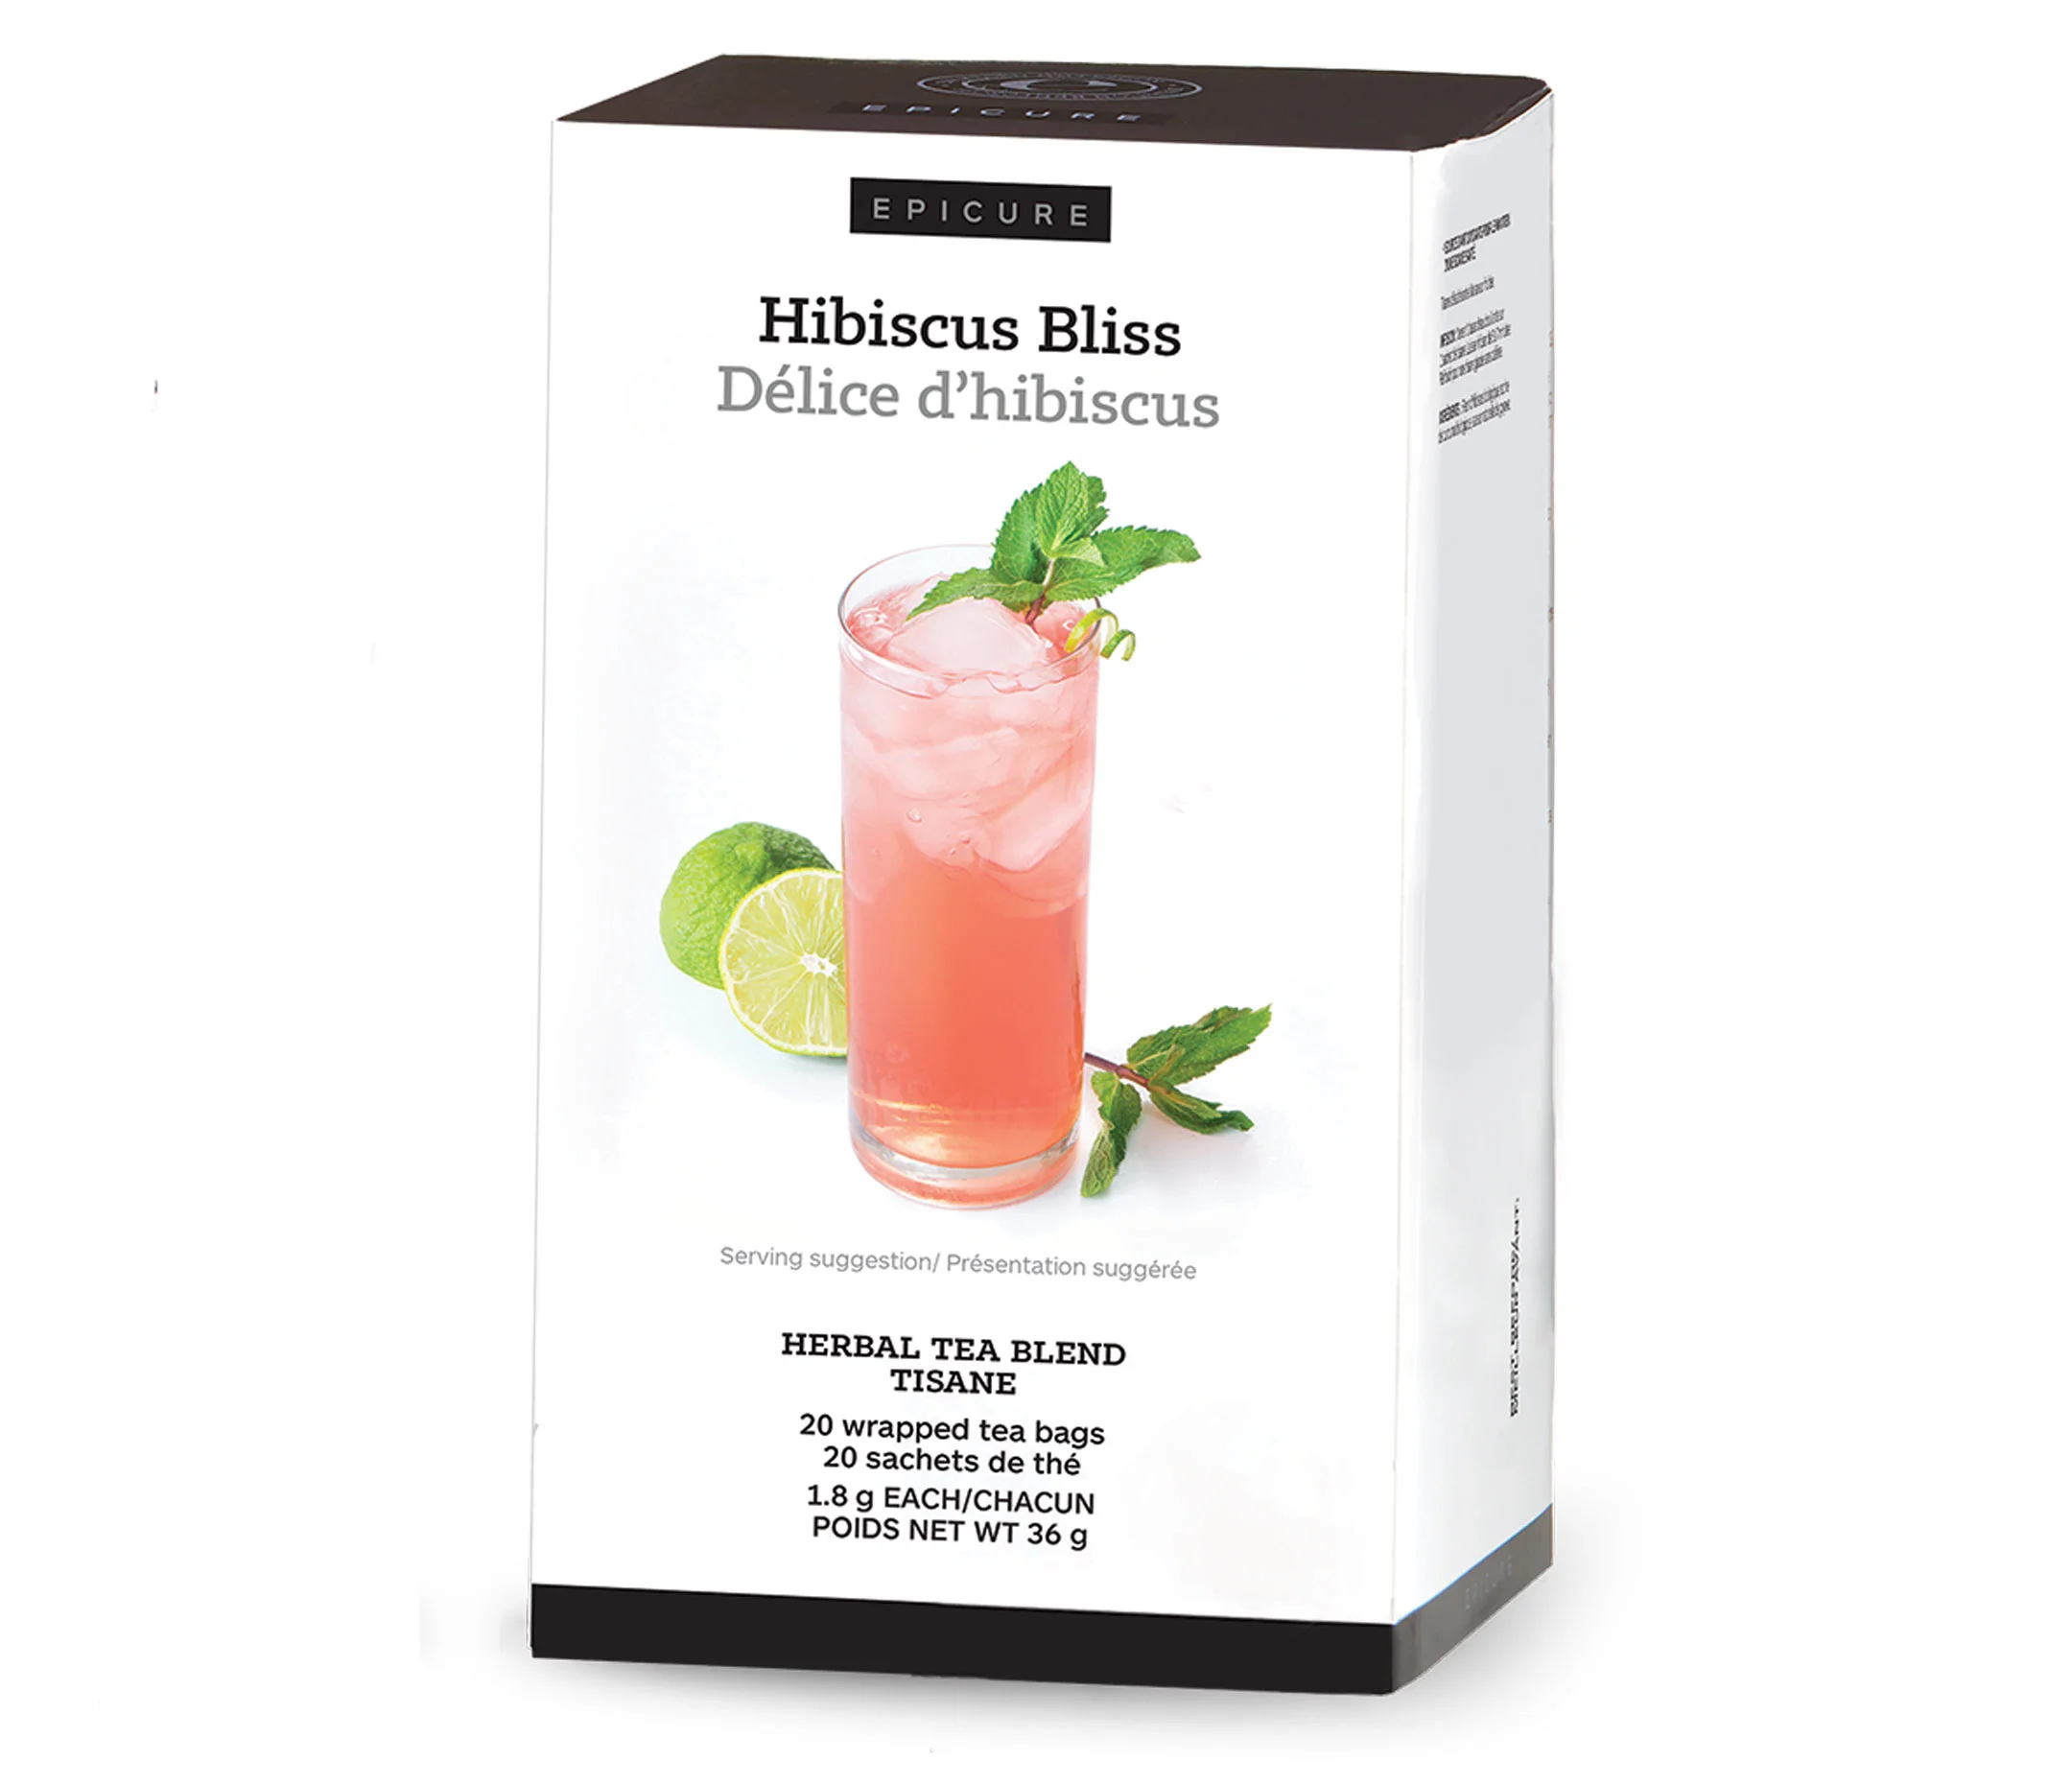 Hibiscus Bliss Herbal Tea Blend